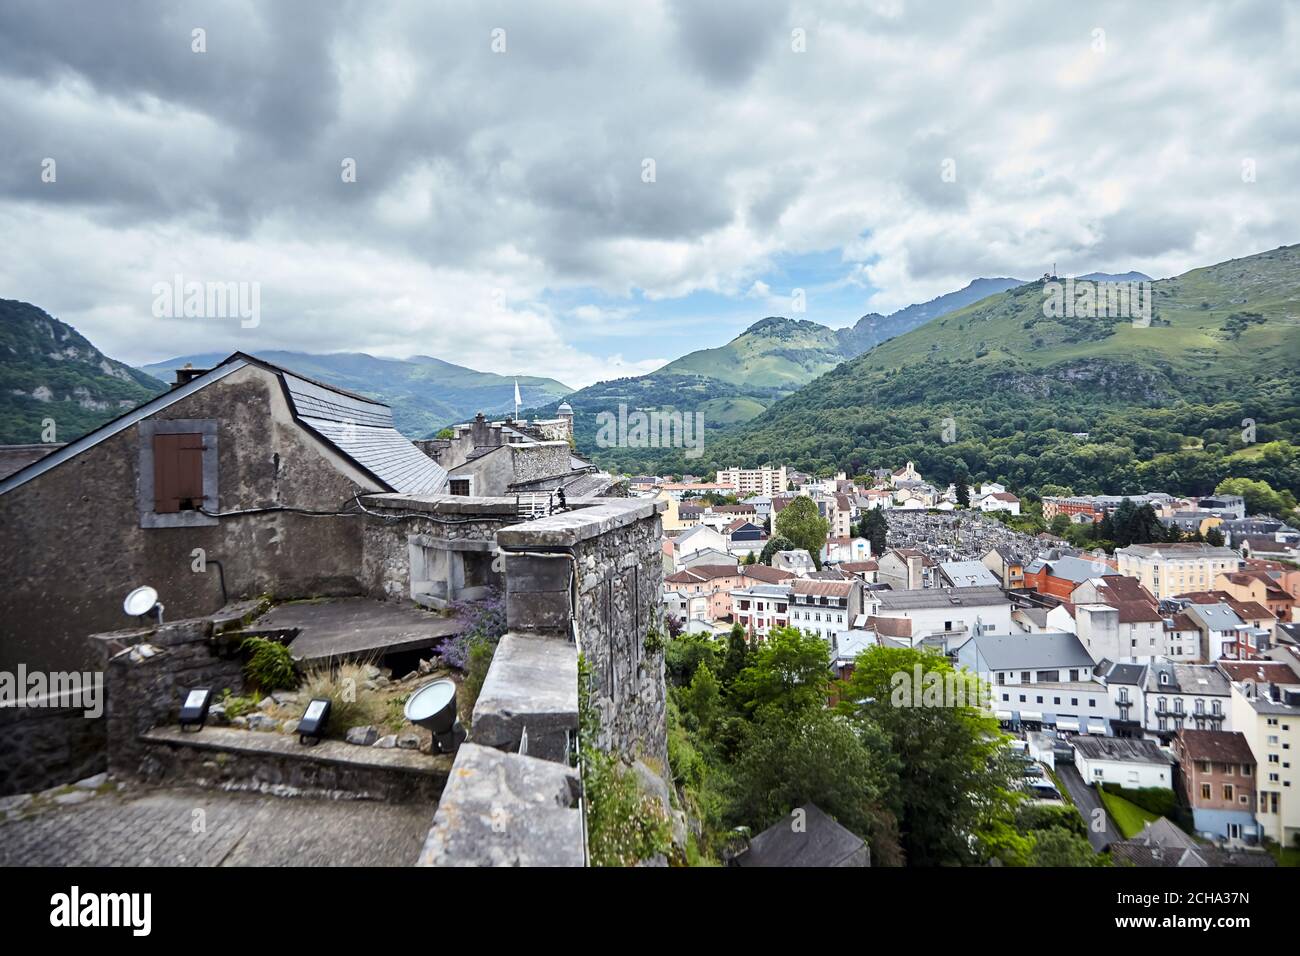 Schloss Fort von Lourdes und Dächer von Gebäuden. Französisch Stadt liegt in Südfrankreich in den Ausläufern der Pyrenäen Stockfoto